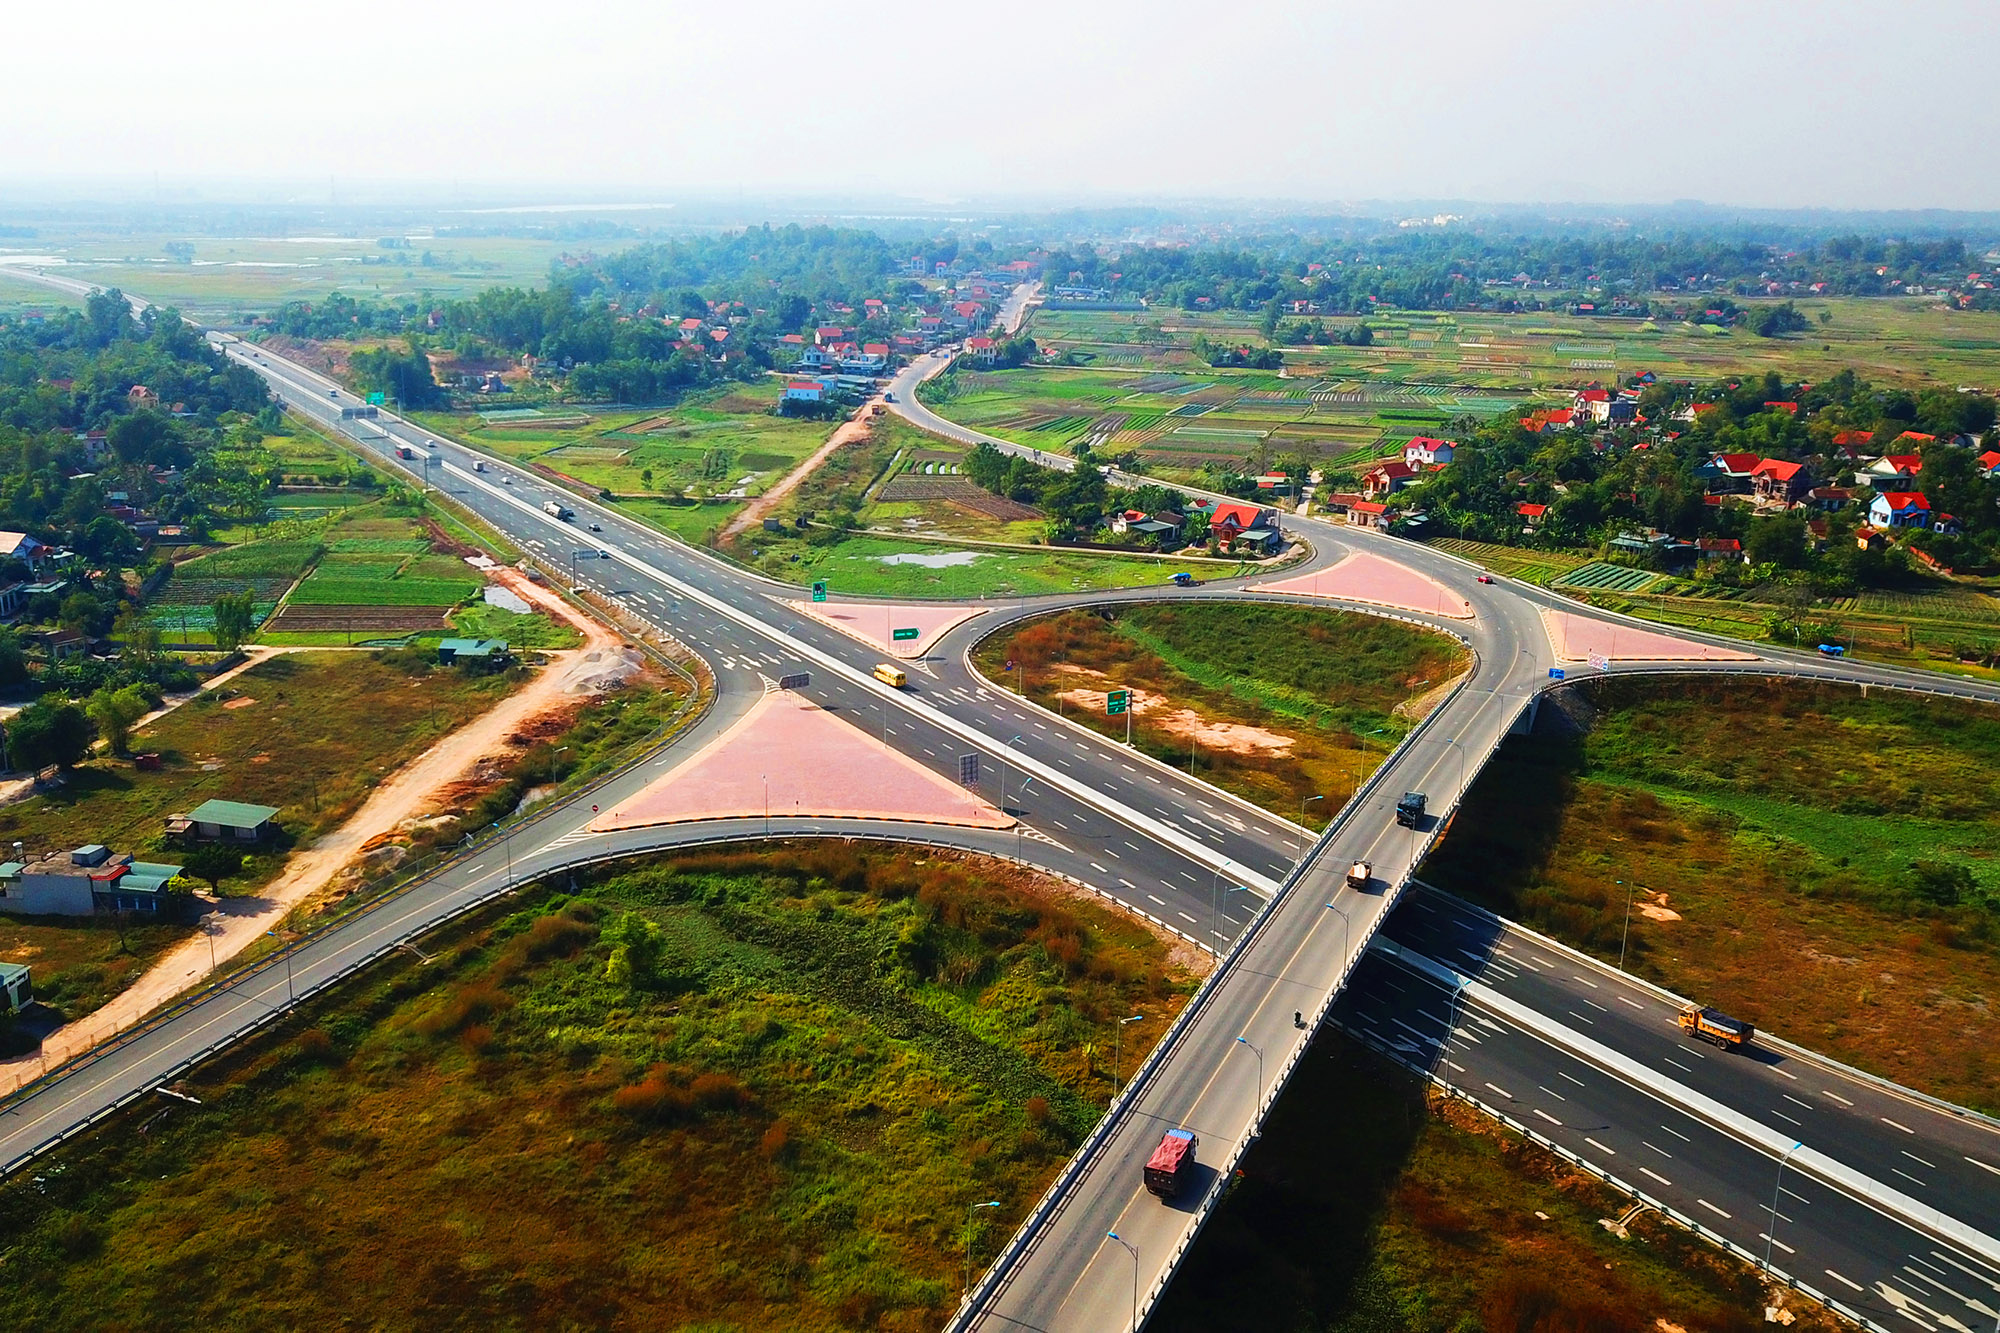 Trong chuỗi các công trình nổi bật 5 năm gần đây, đầu tiên phải nhắc đến đó là tuyến cao tốc Hạ Long - Hải Phòng. Đây là dự án cao tốc đầu tiên tại tỉnh Quảng Ninh, đồng thời cũng là tuyến cao tốc đầu tiên do địa phương tự đầu tư trên cả nước. Tuyến đường đưa vào hoạt động đã rút ngắn thời gian di chuyển từ Hà Nội - Hạ Long từ 3h30' xuống còn 1h45'.